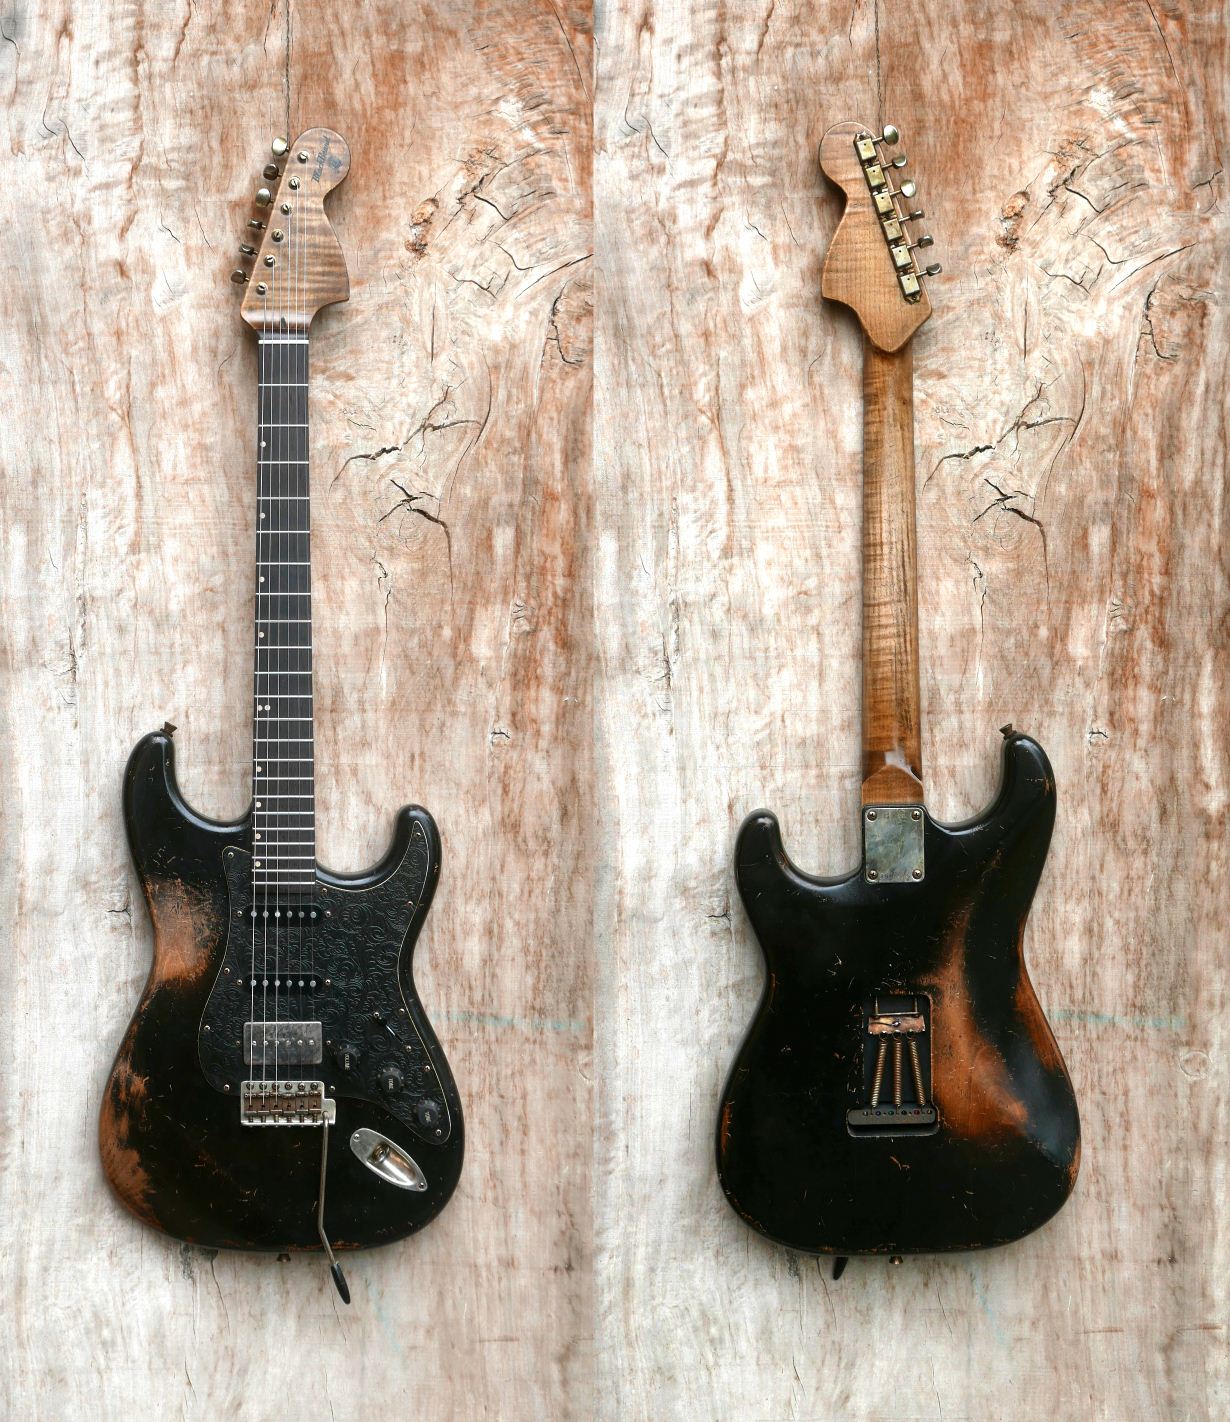 chitarra stratocaster nera fronte retro